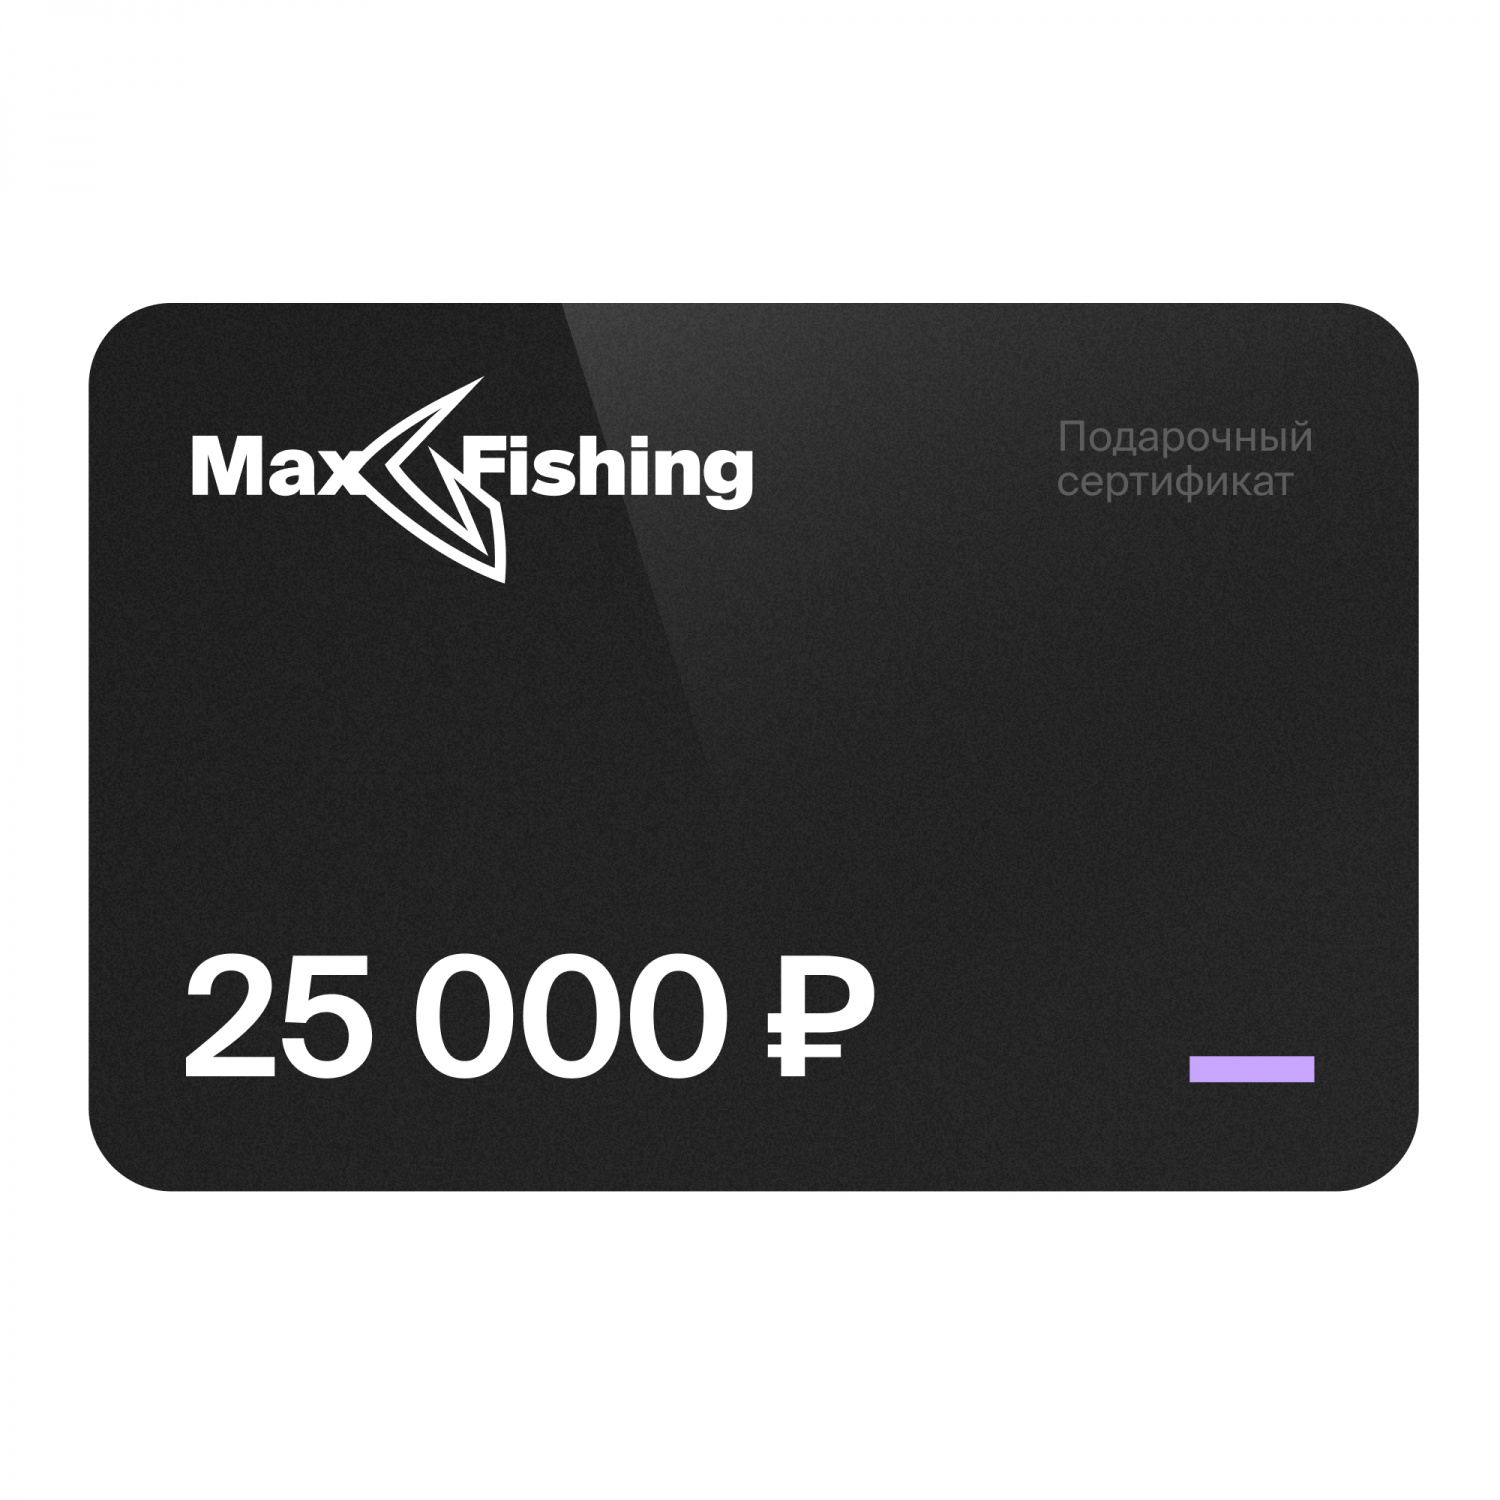 Подарочный сертификат MaxFishing 25 000 ₽ подарочный сертификат maxfishing 5